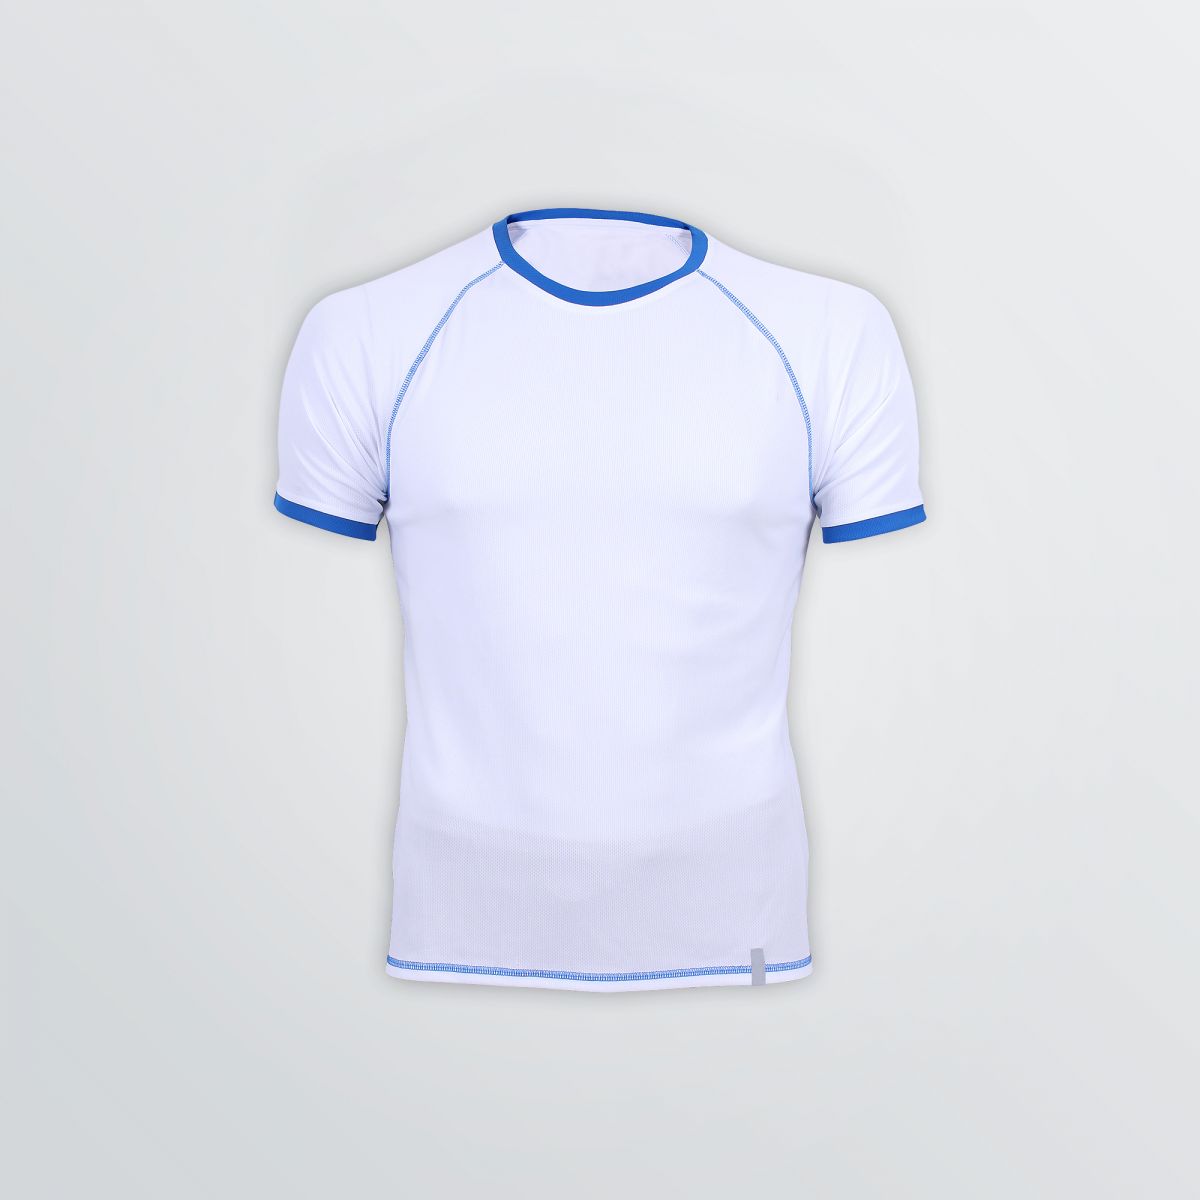 Atmungsaktives Match Tech Shirt mit Flatlocks zum Individualisieren als Produktbeispiel in weißer Farbe mit blauen Flatlocks - Frontansicht